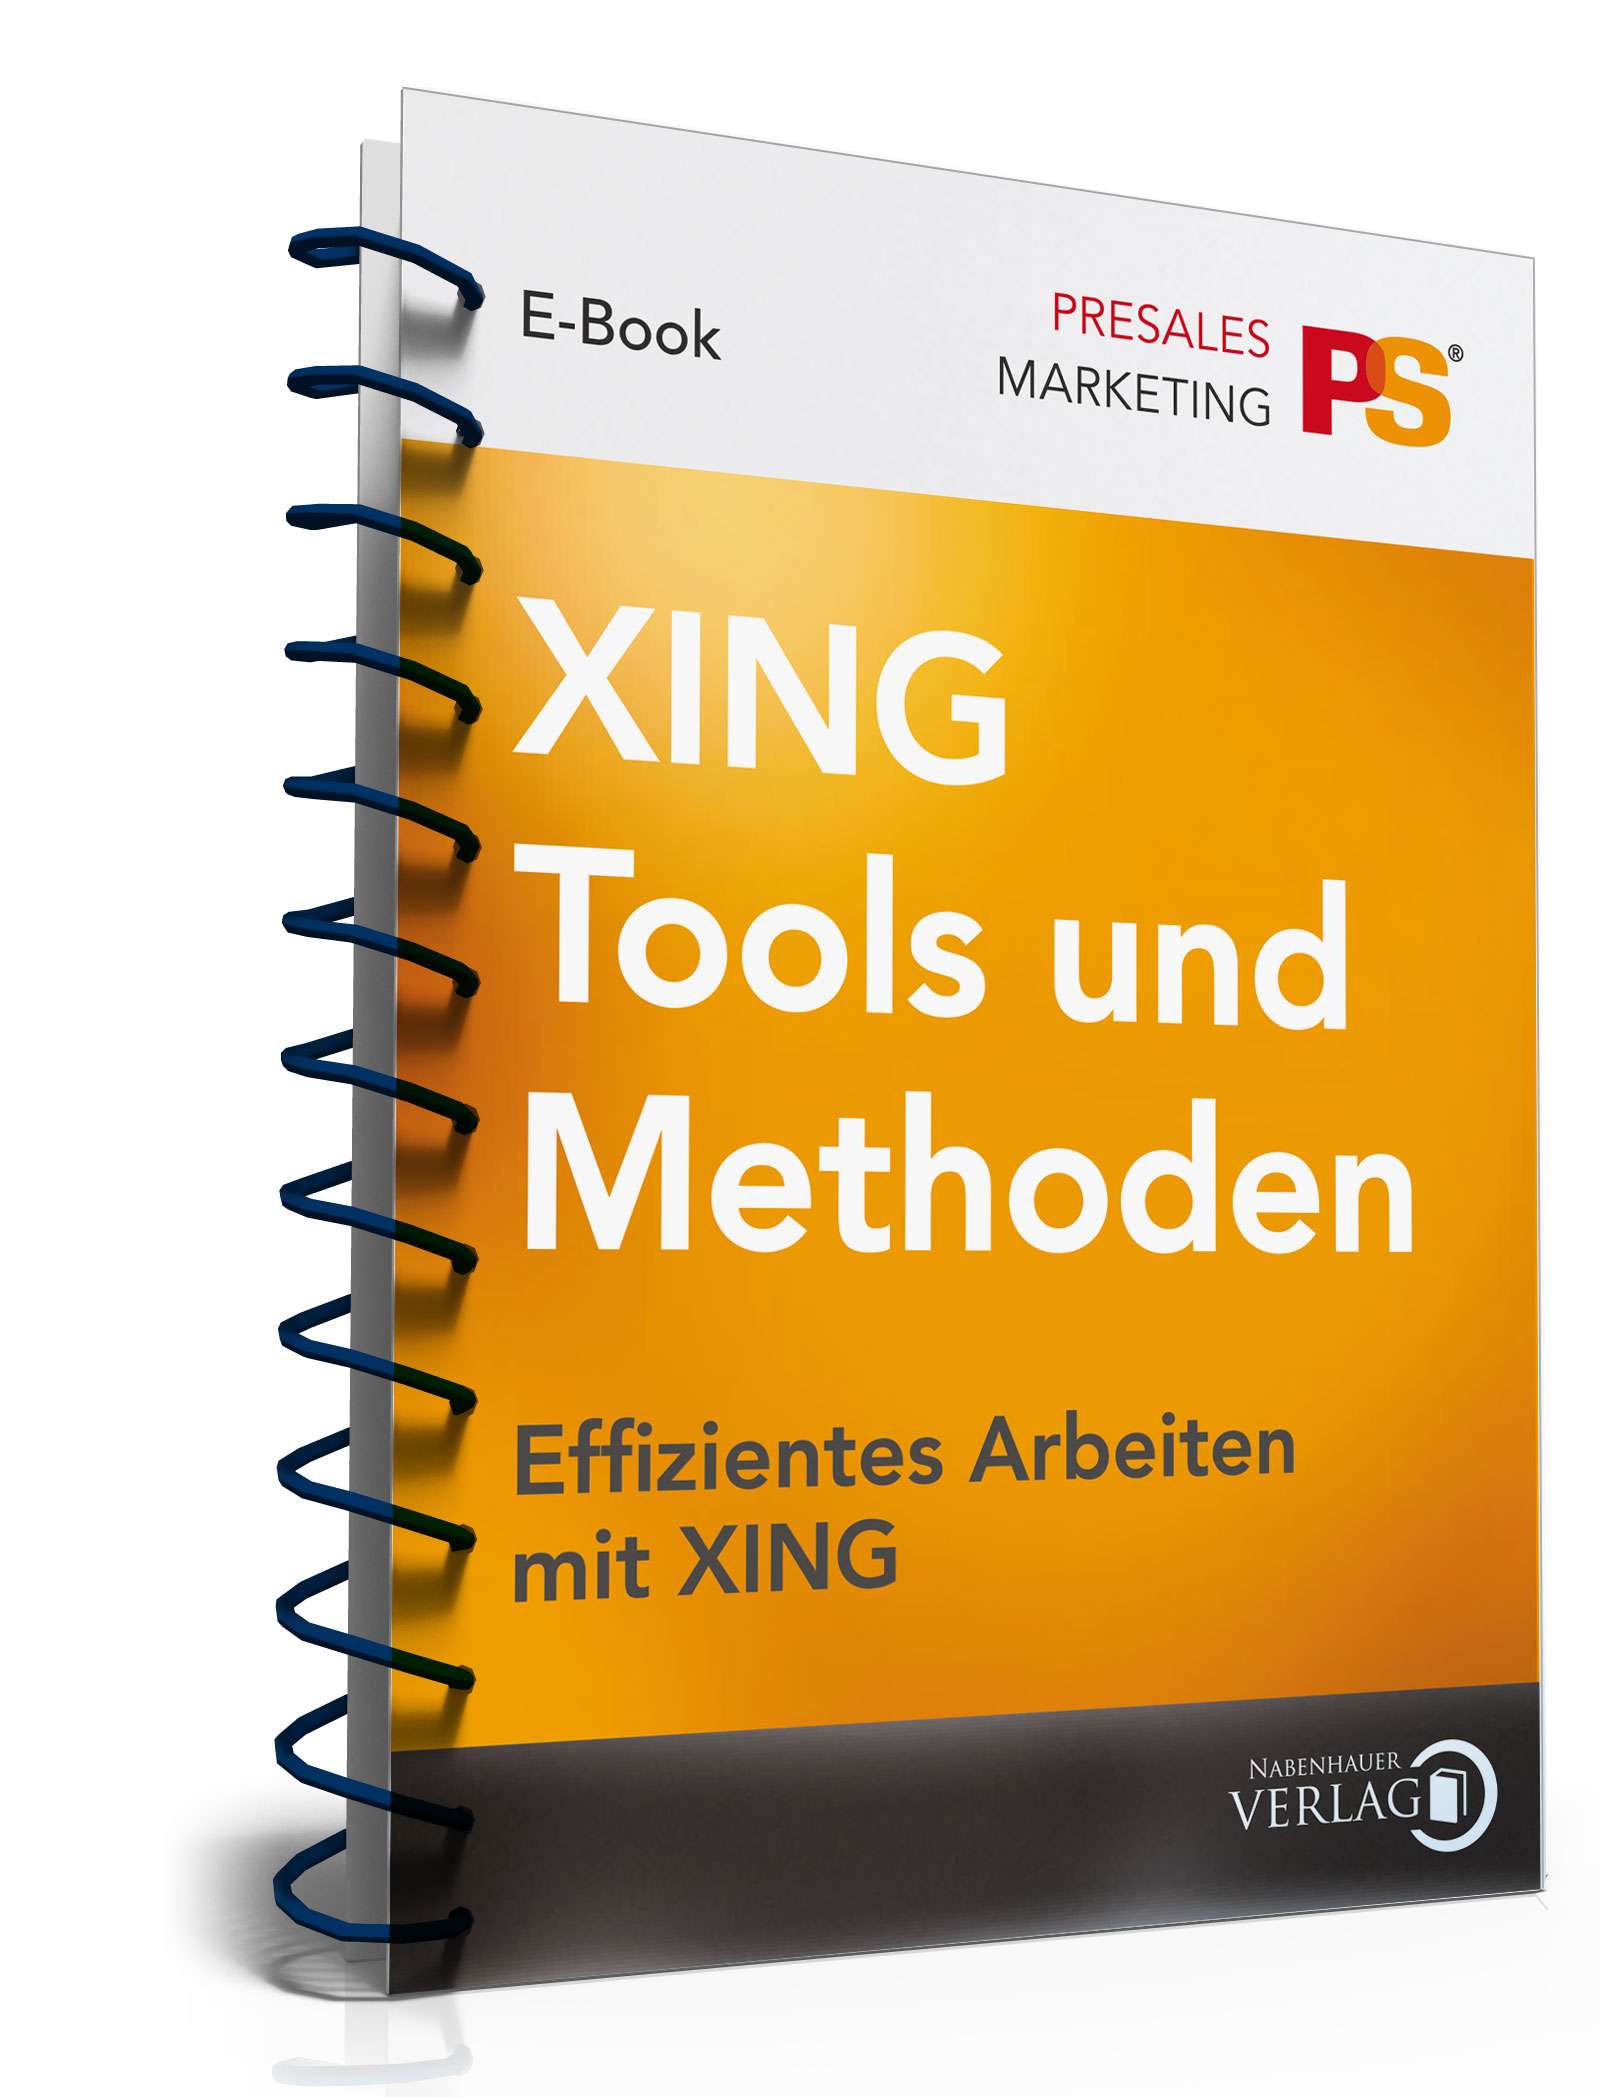 Hauptbild des Produkts: Ratgeber XING Tools/Methoden